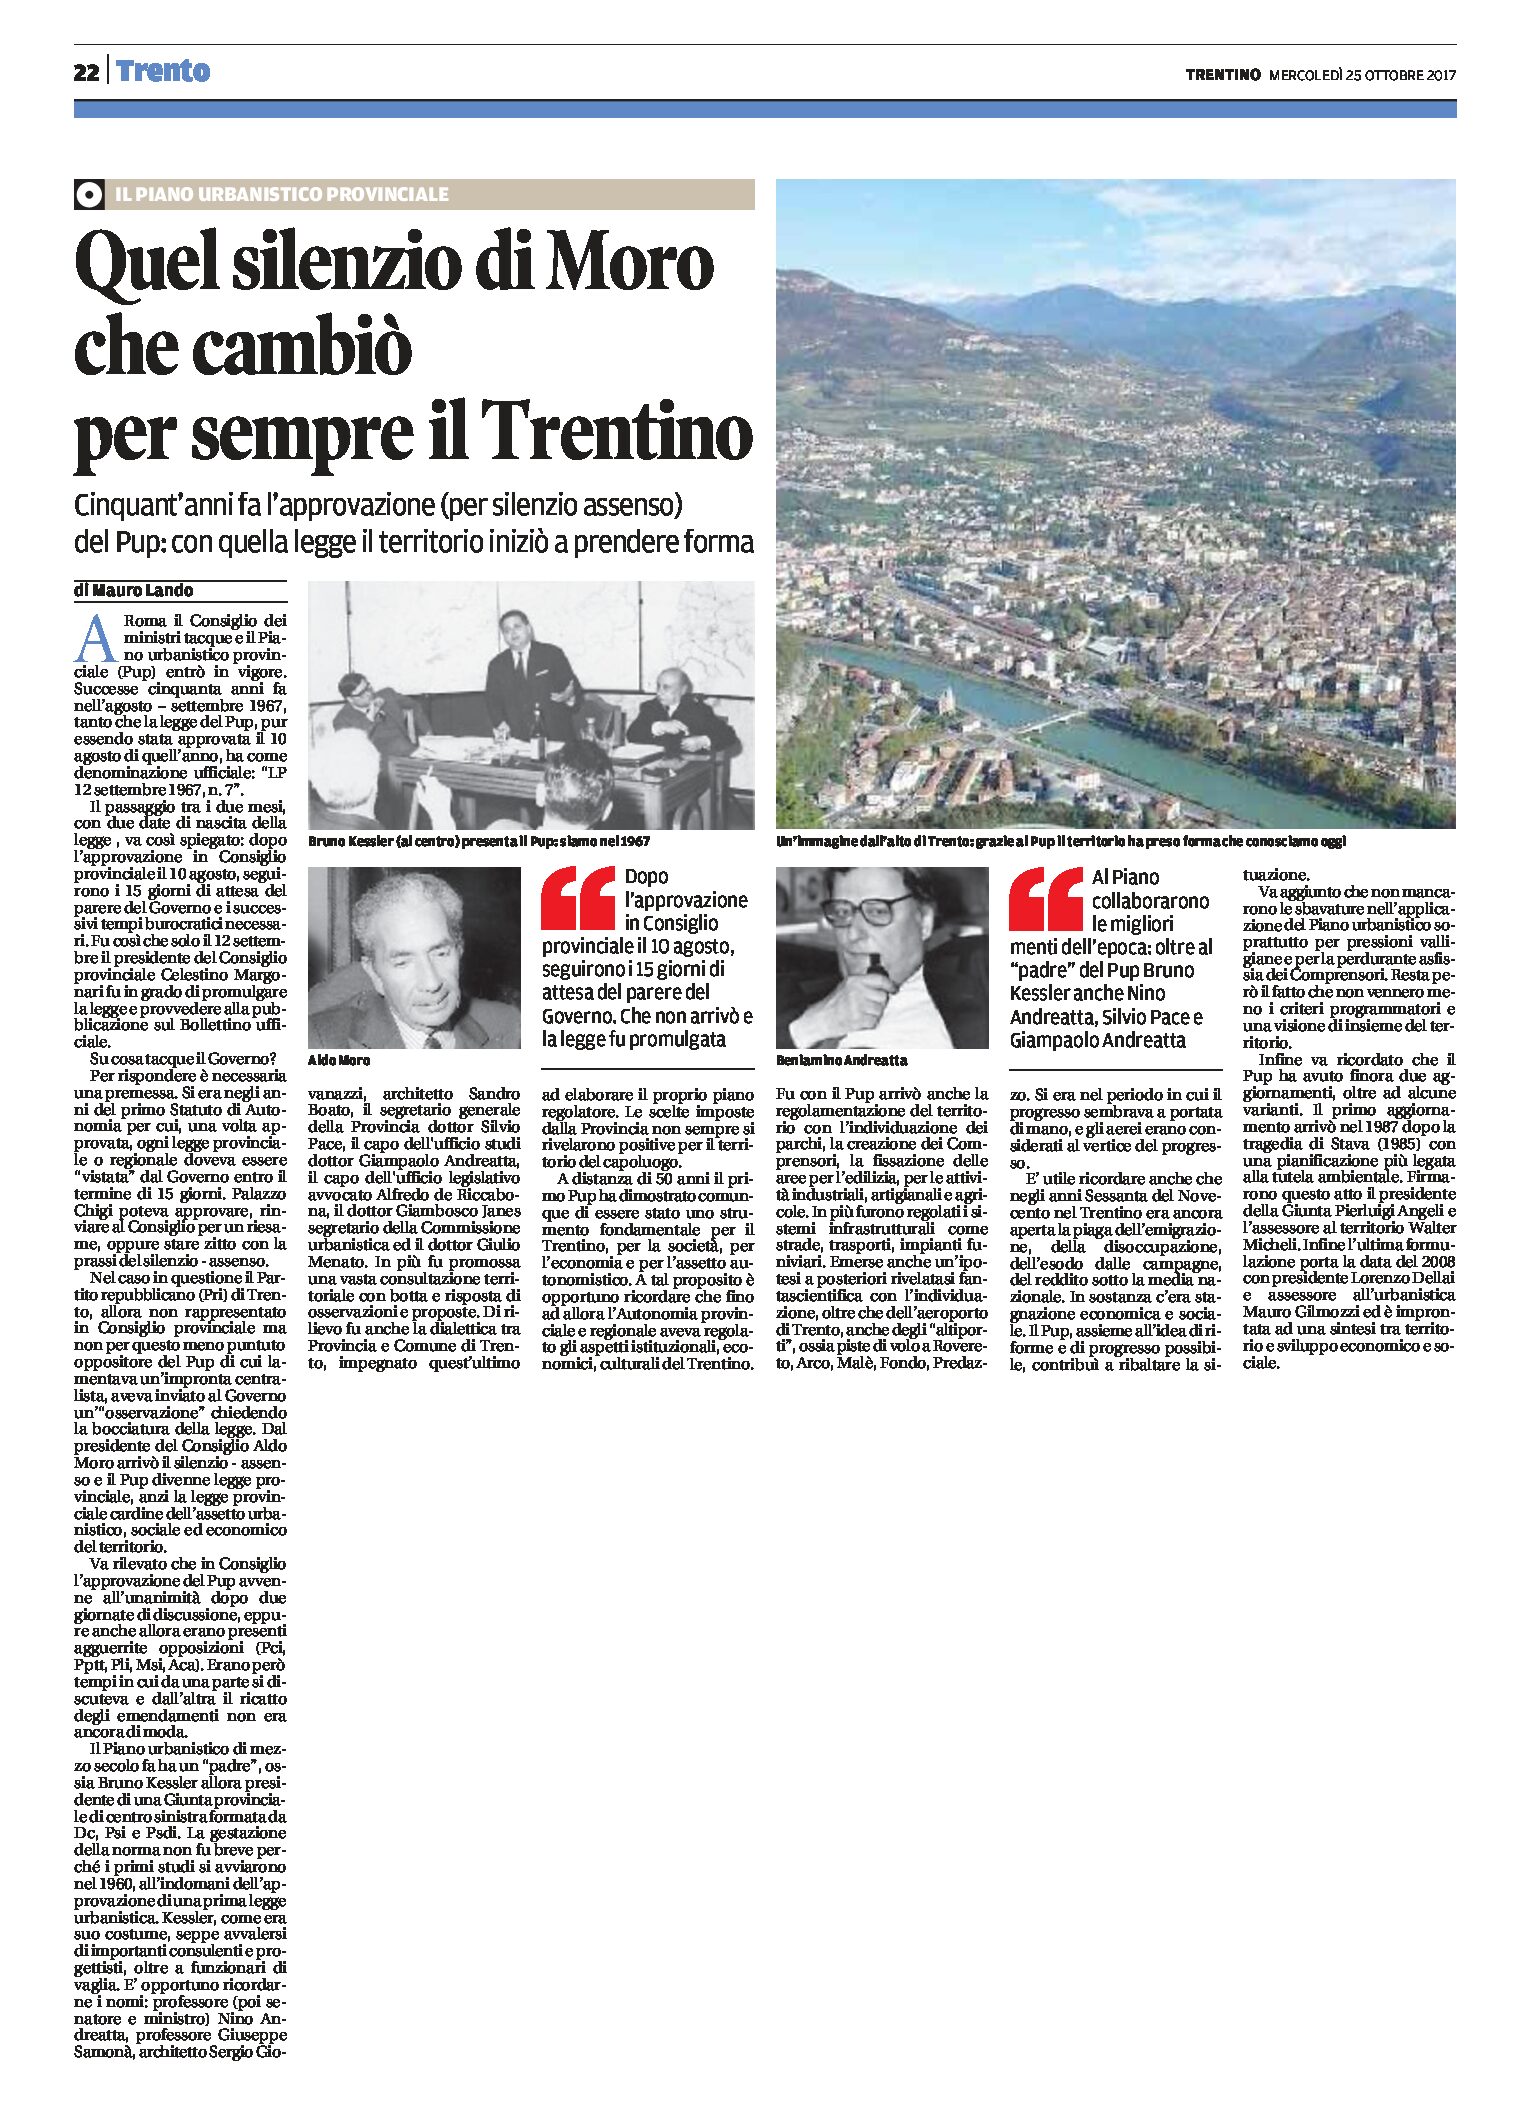 Pup: quel silenzio di Moro che cambiò per sempre il Trentino